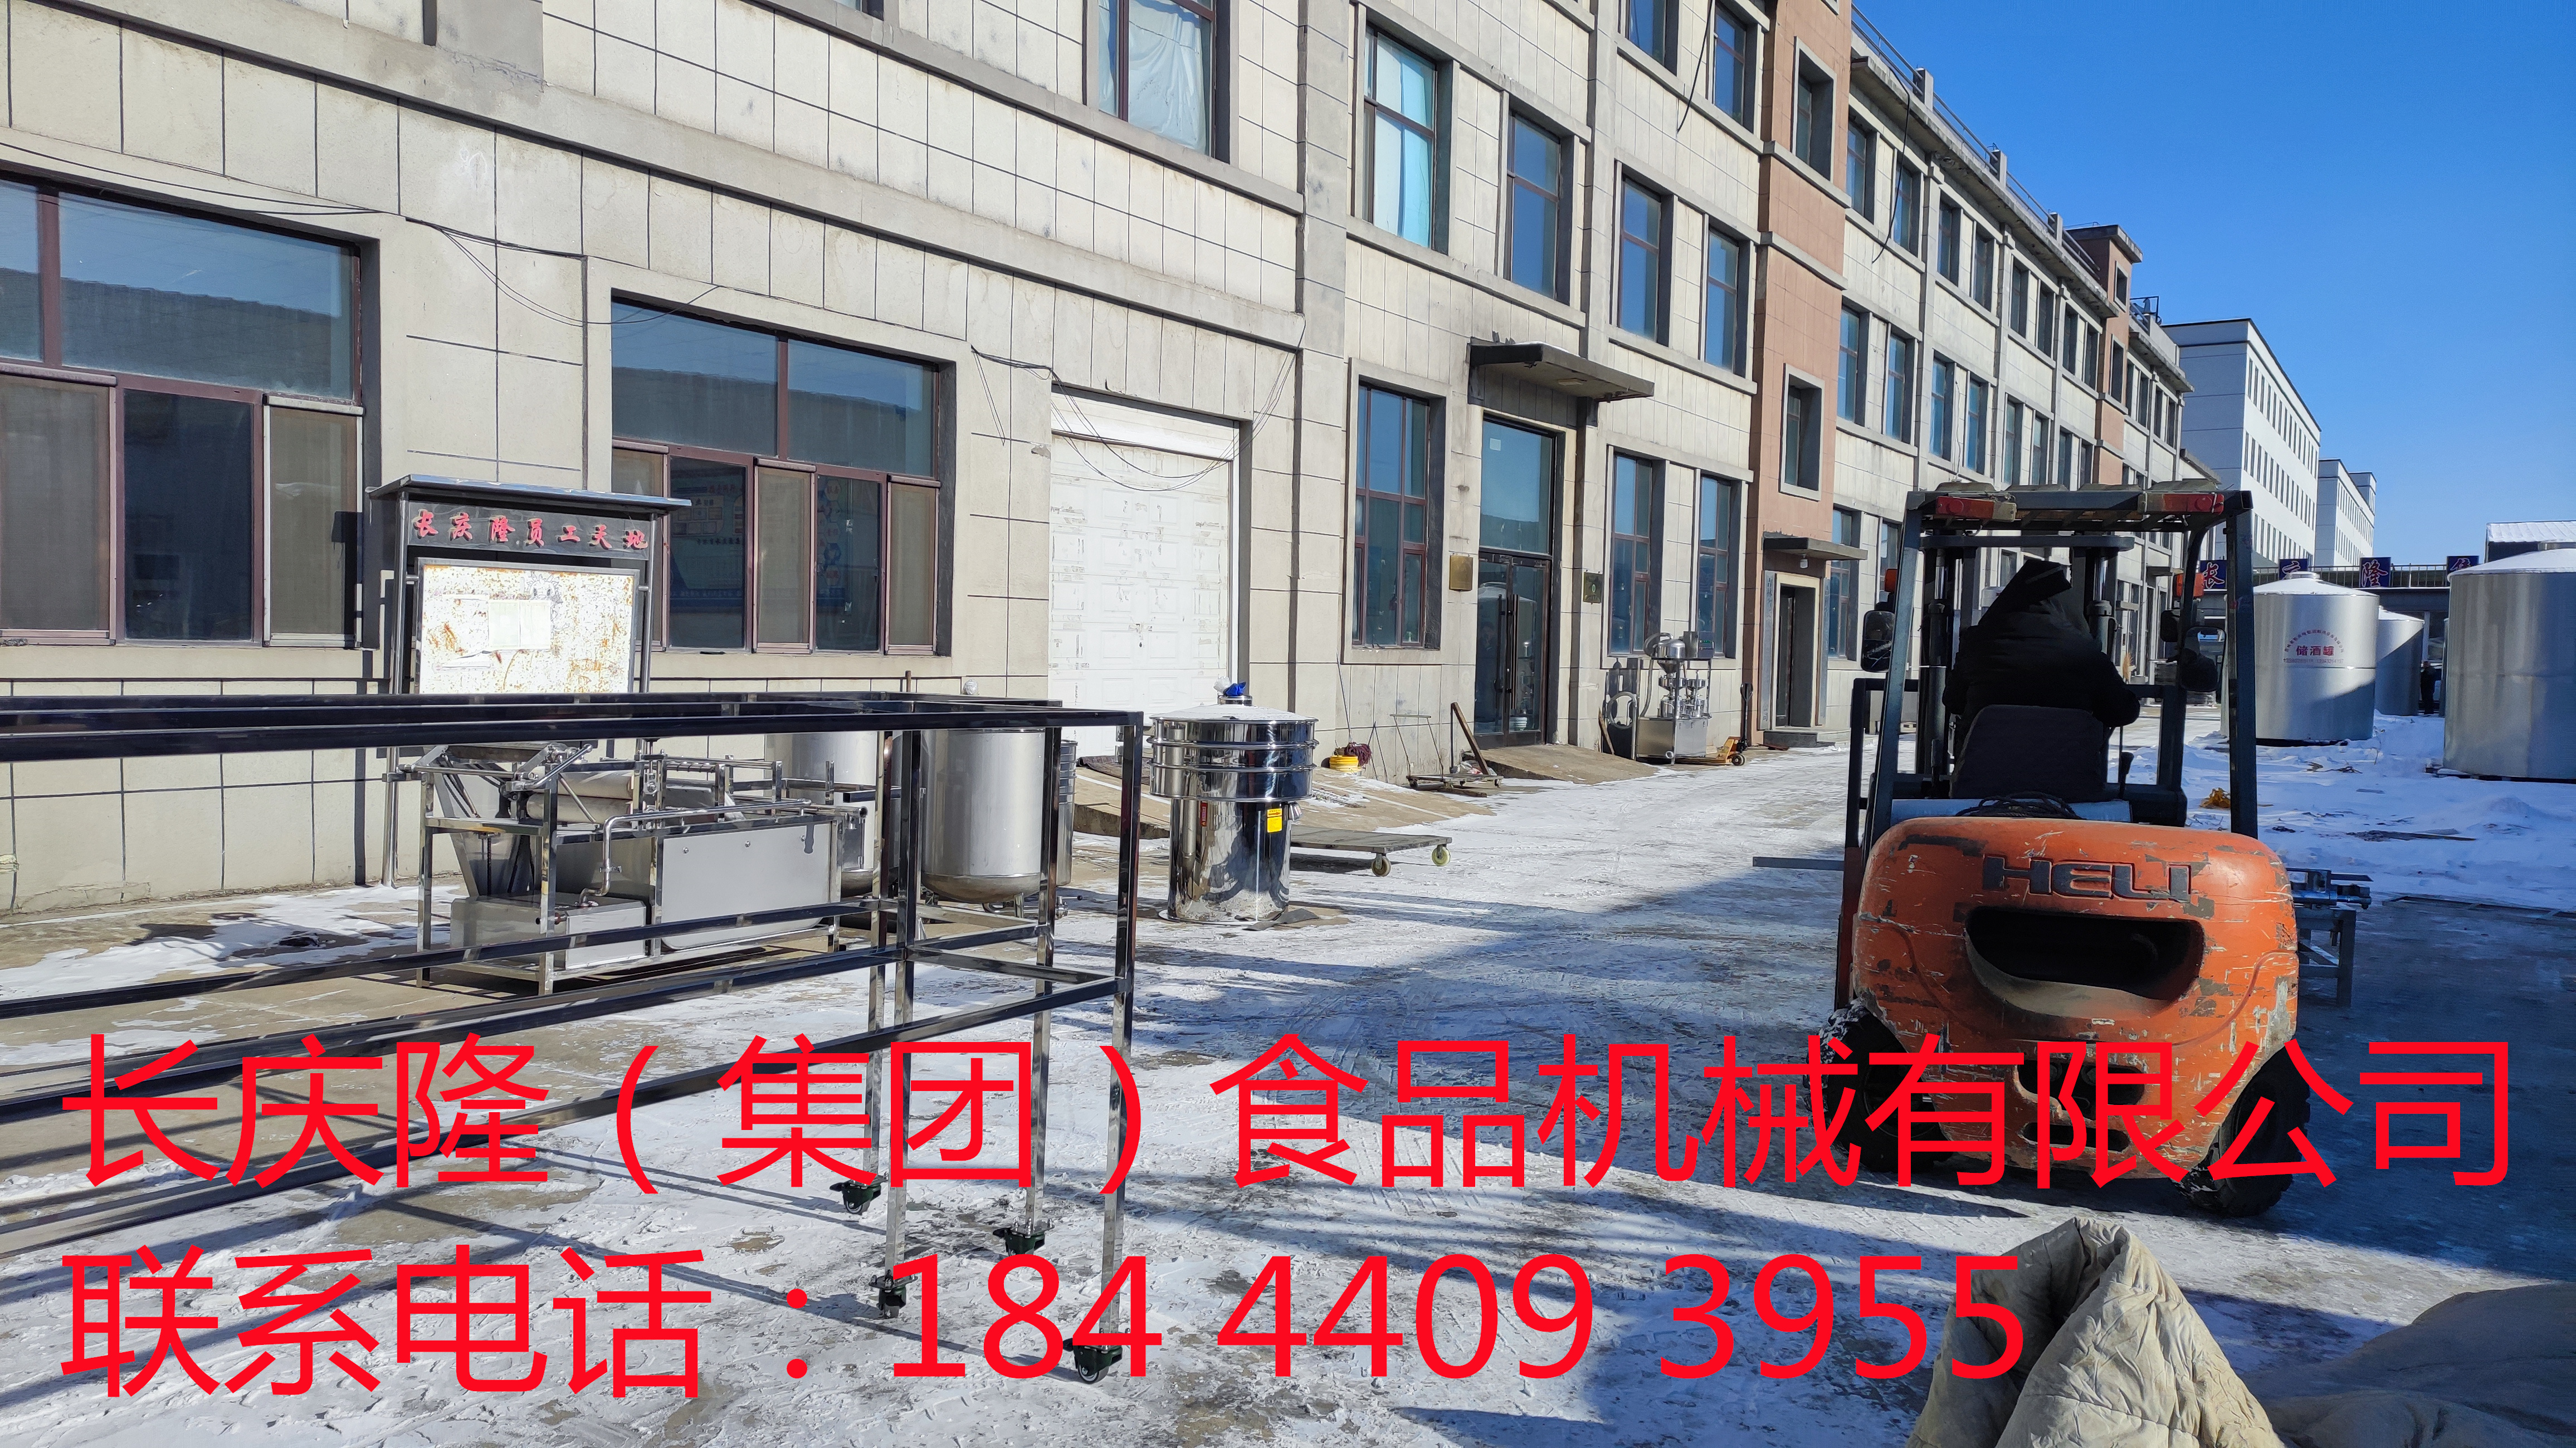 发往锦州的大型豆腐机设备装车发货 (8)_副本.jpg